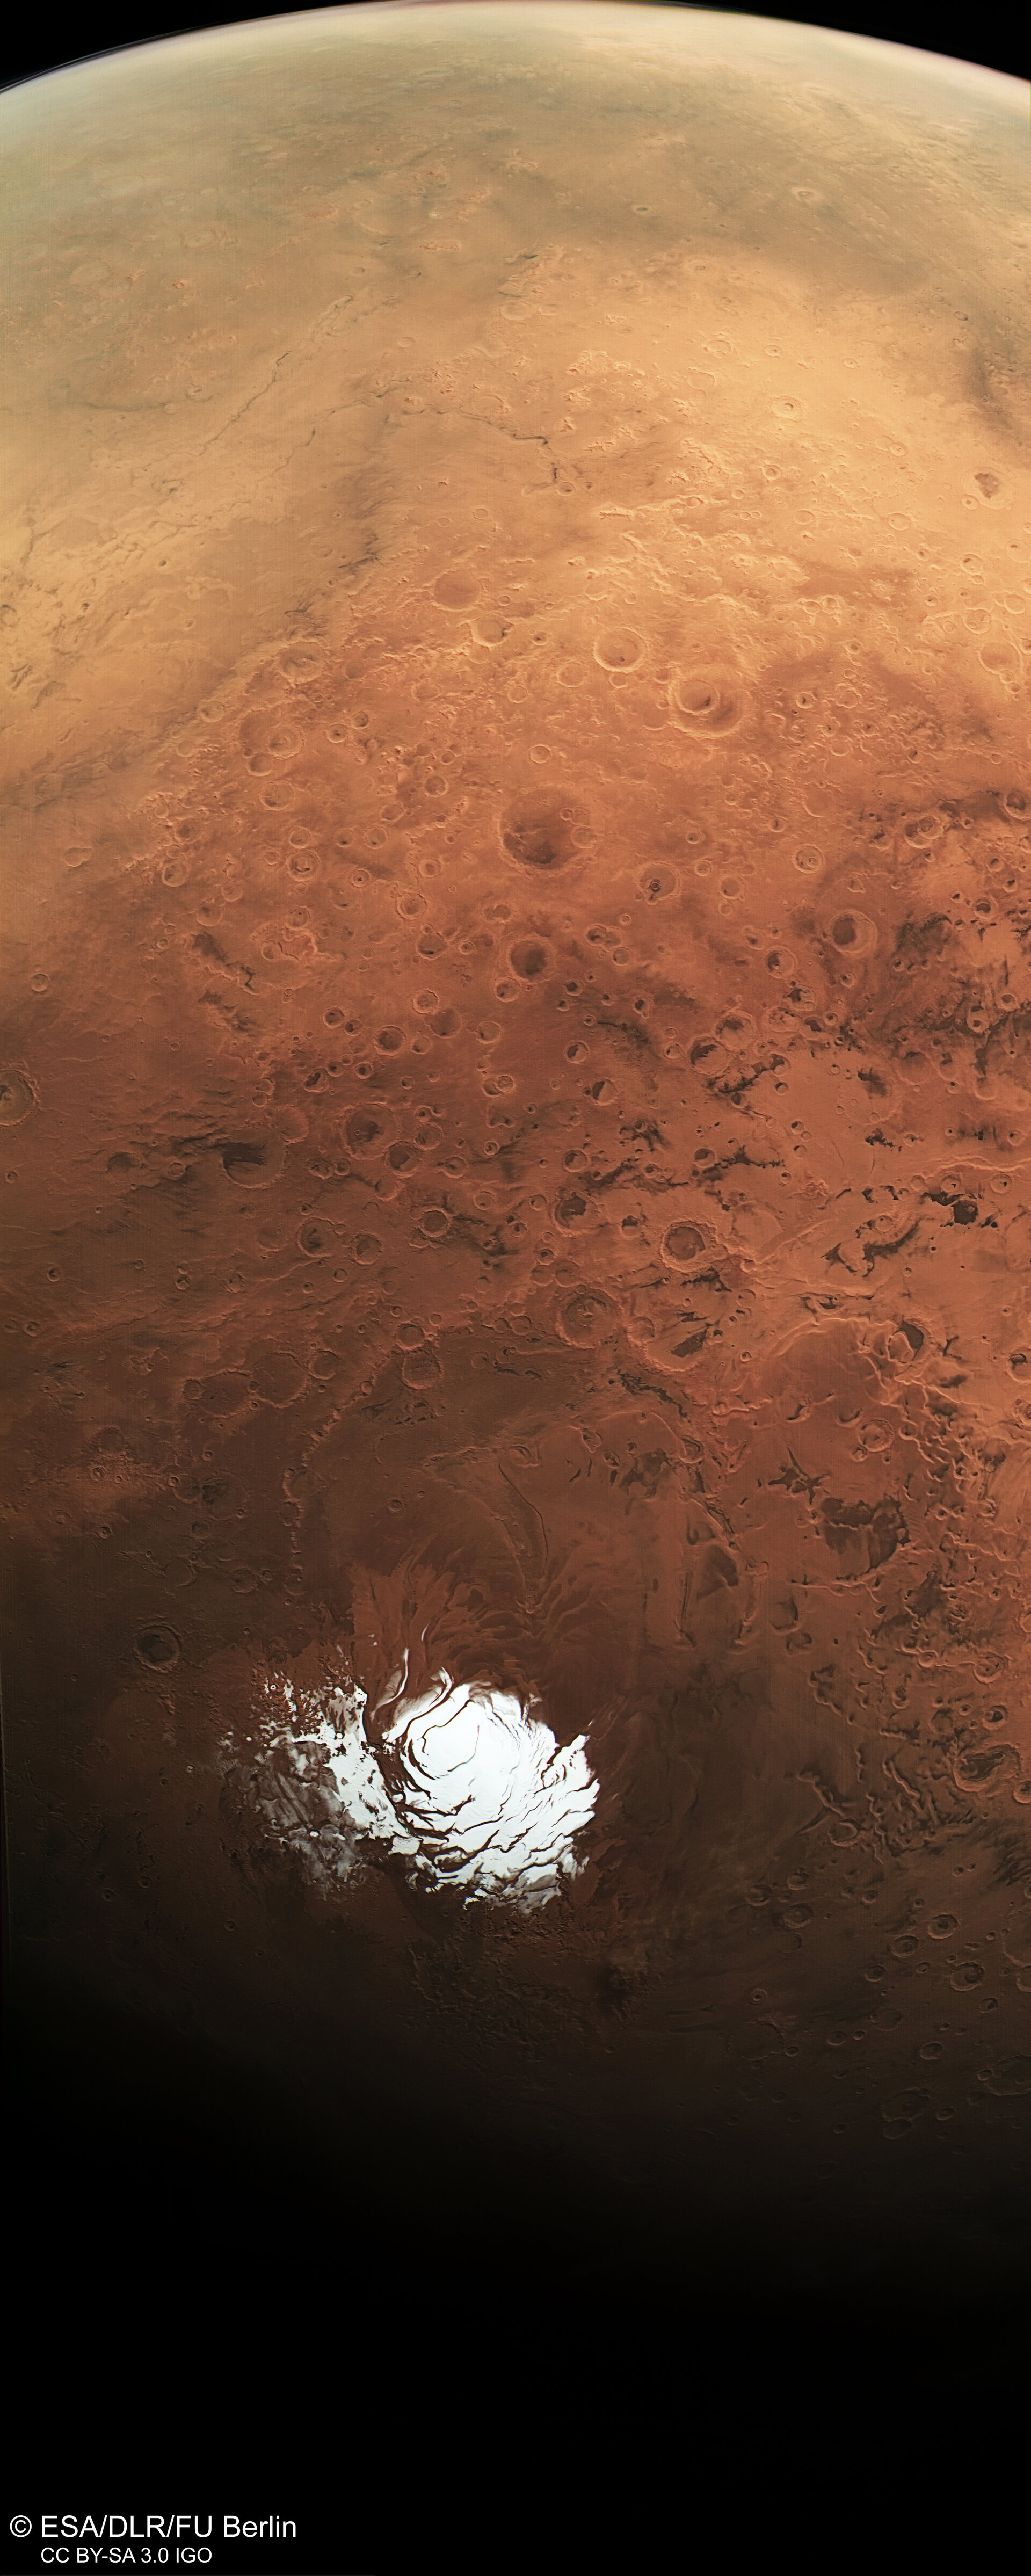 Jižní polární oblast Marsu a její okolí